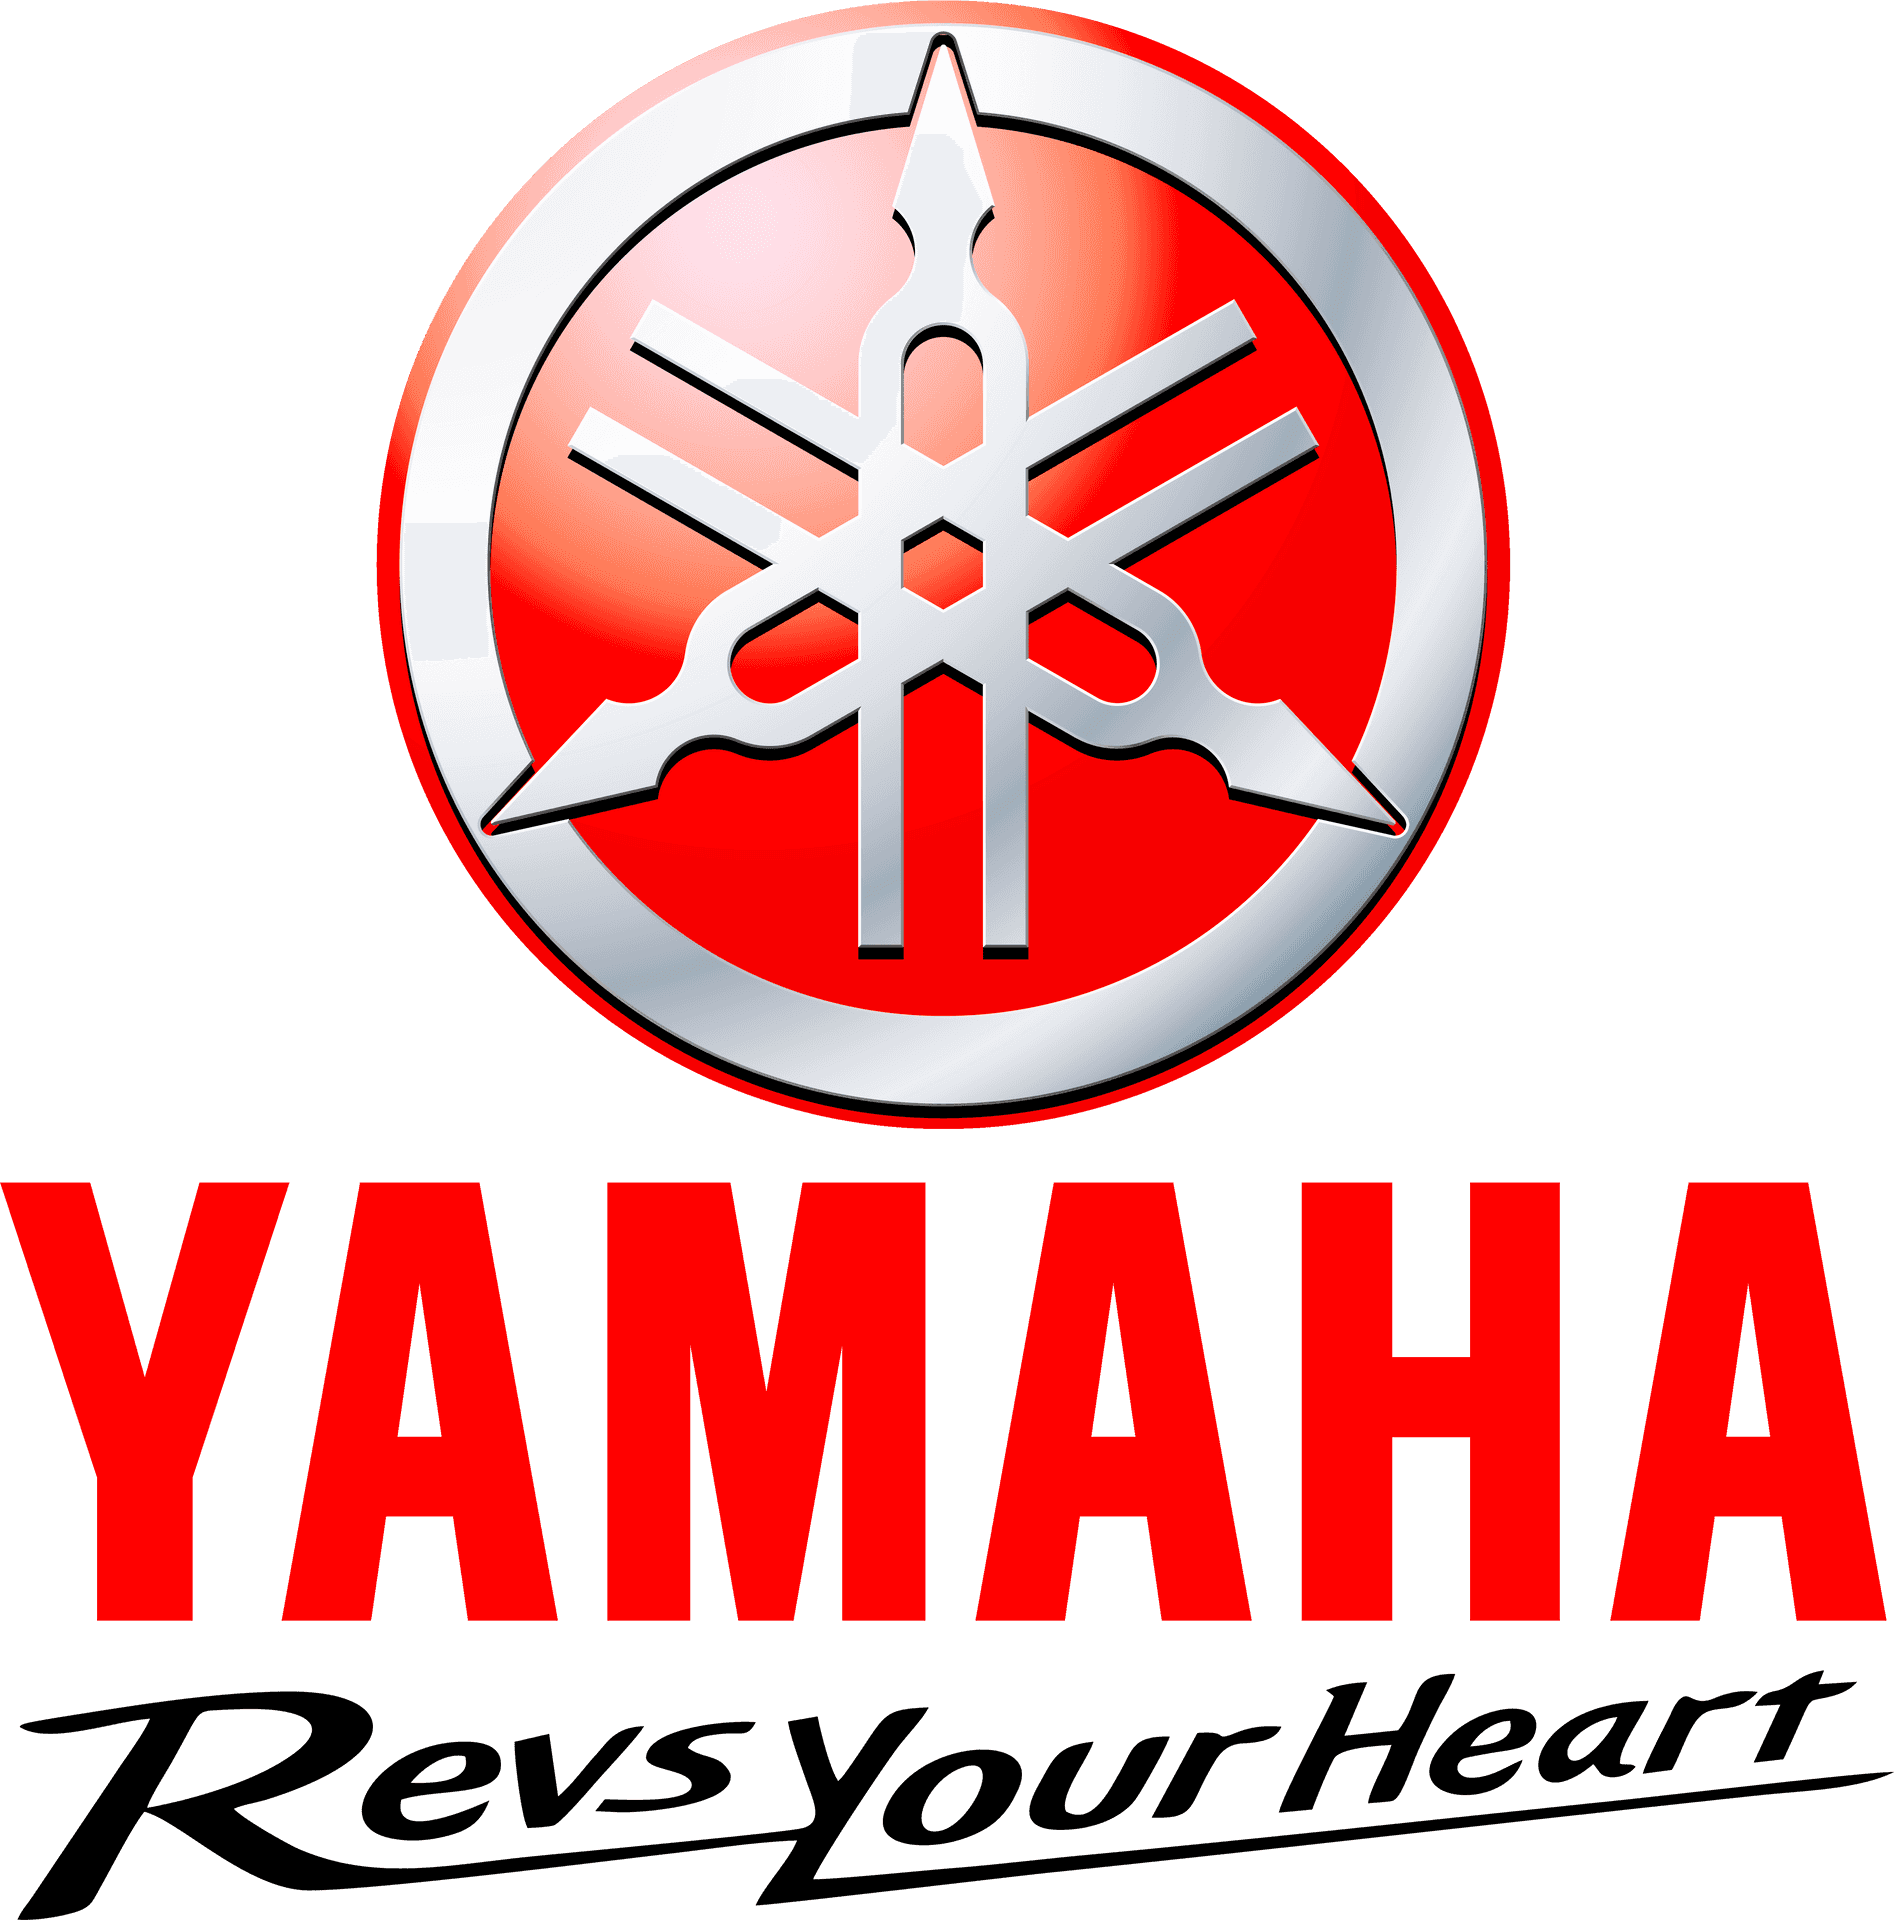 Yamaha Logowith Slogan PNG